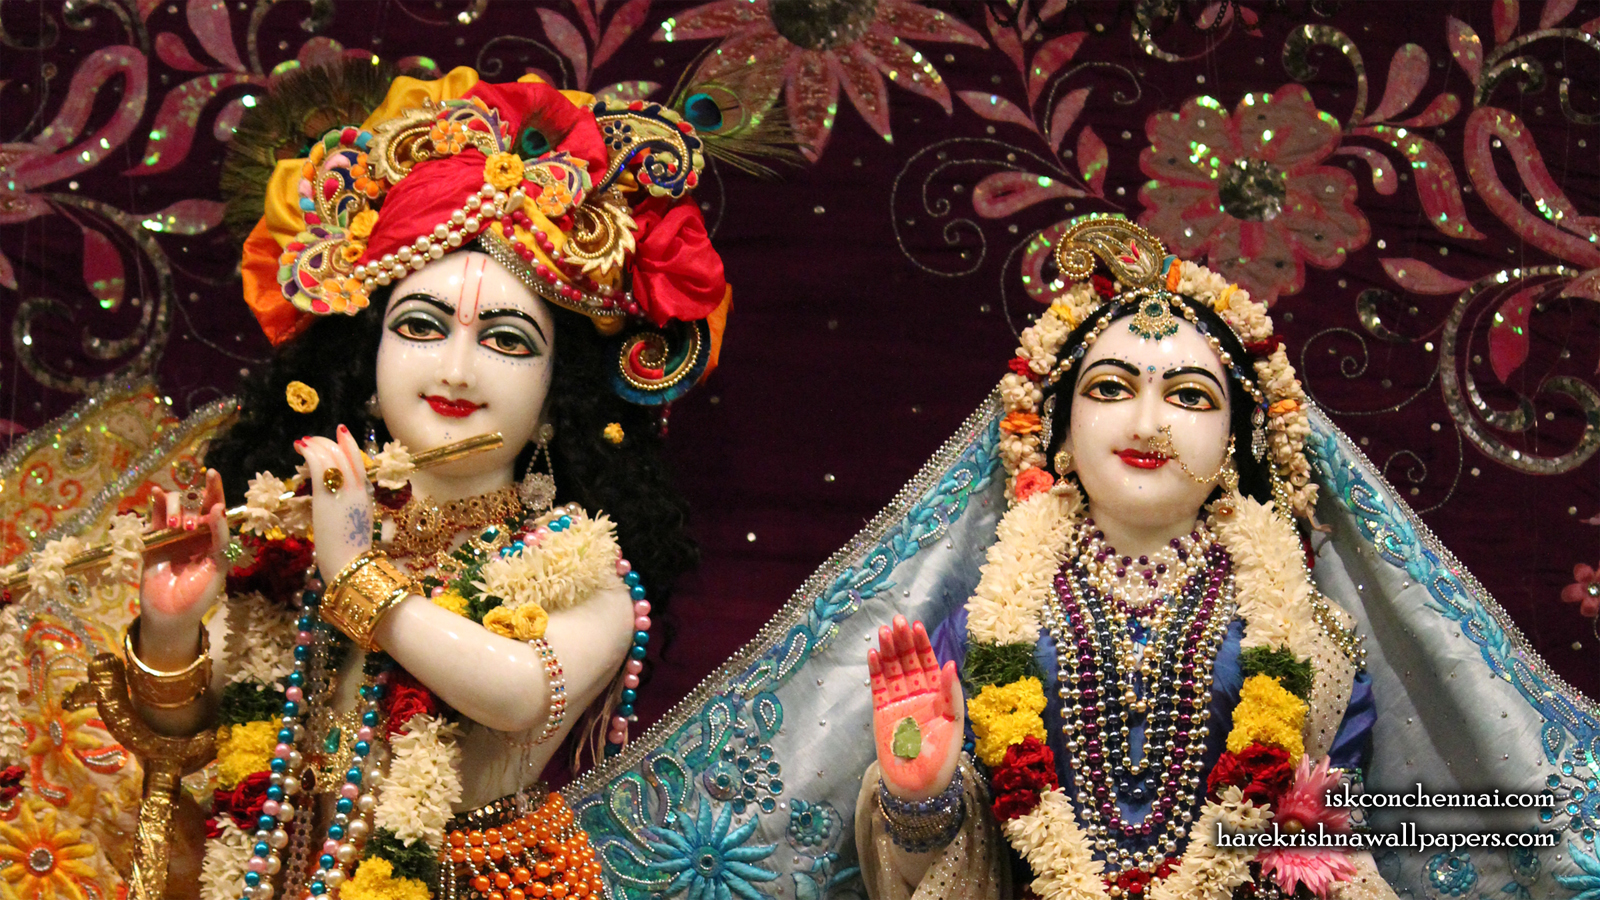 Sri Sri Radha Krishna Close up Wallpaper (012) Size 1600x900 Download